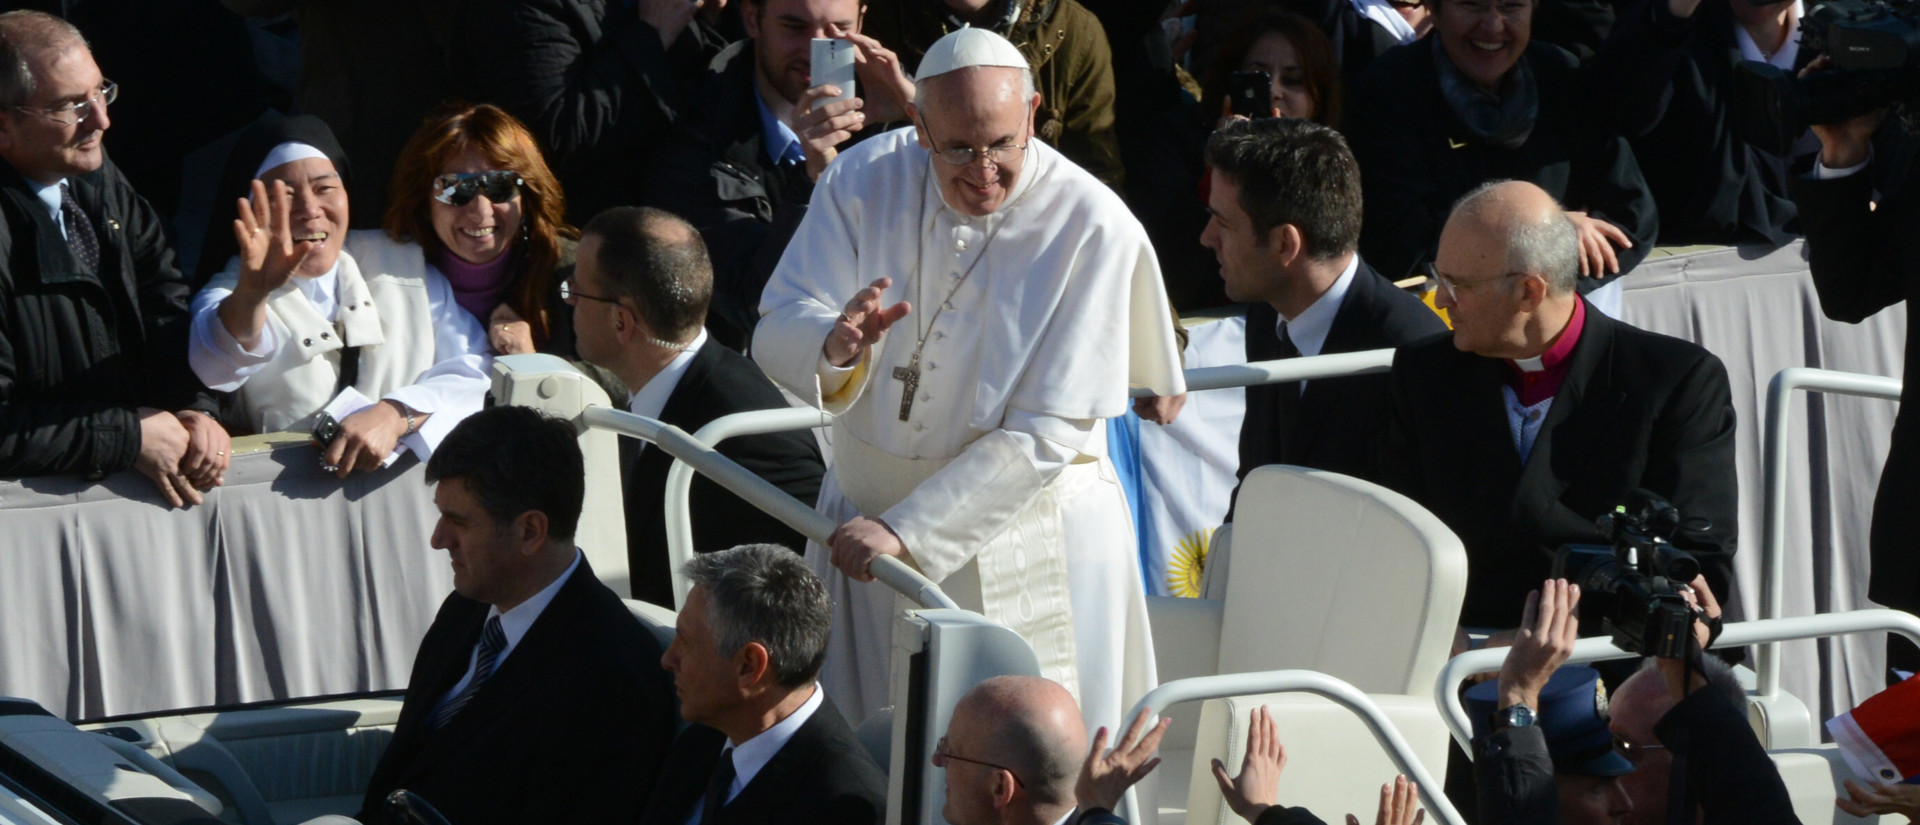 Bad in der Menge: Papst Franziskus auf dem Papamobil auf dem Petersplatz.